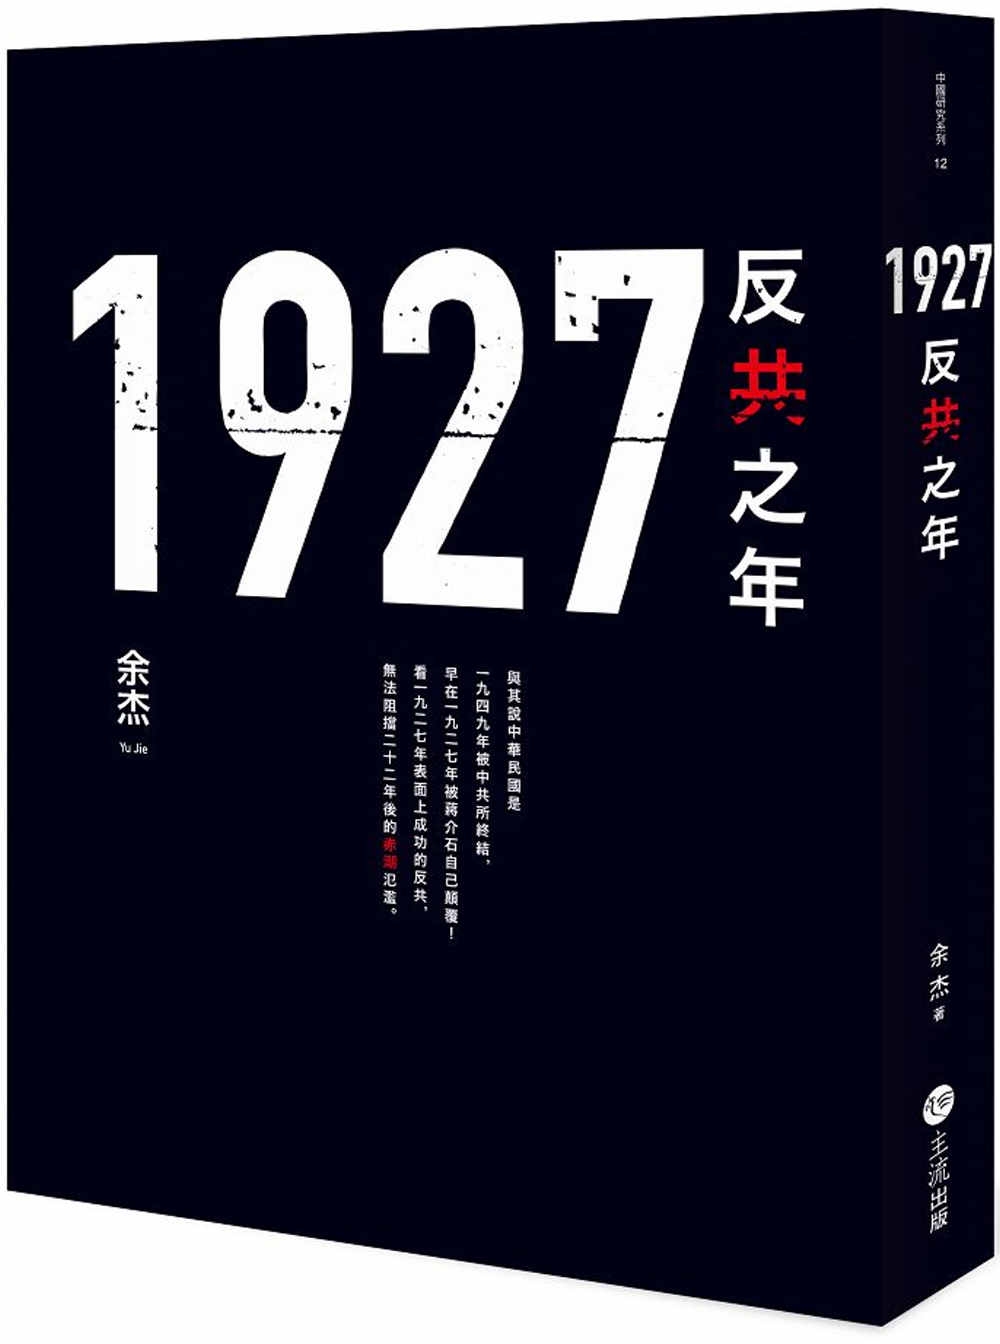 1927: 反共之年